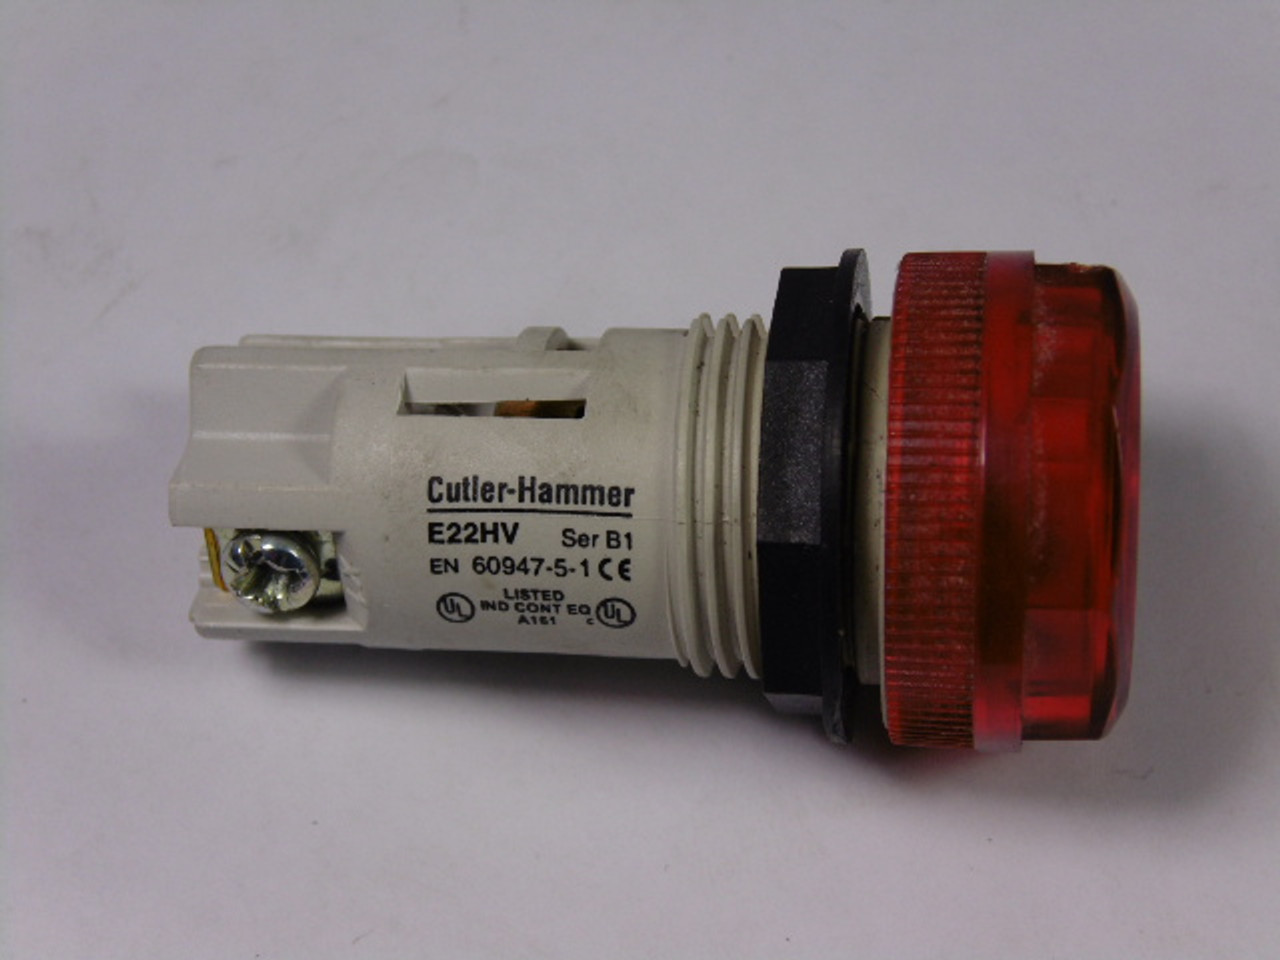 Cutler-Hammer E22HVP2 Pilot Light Red Lens 250V 2.6W USED